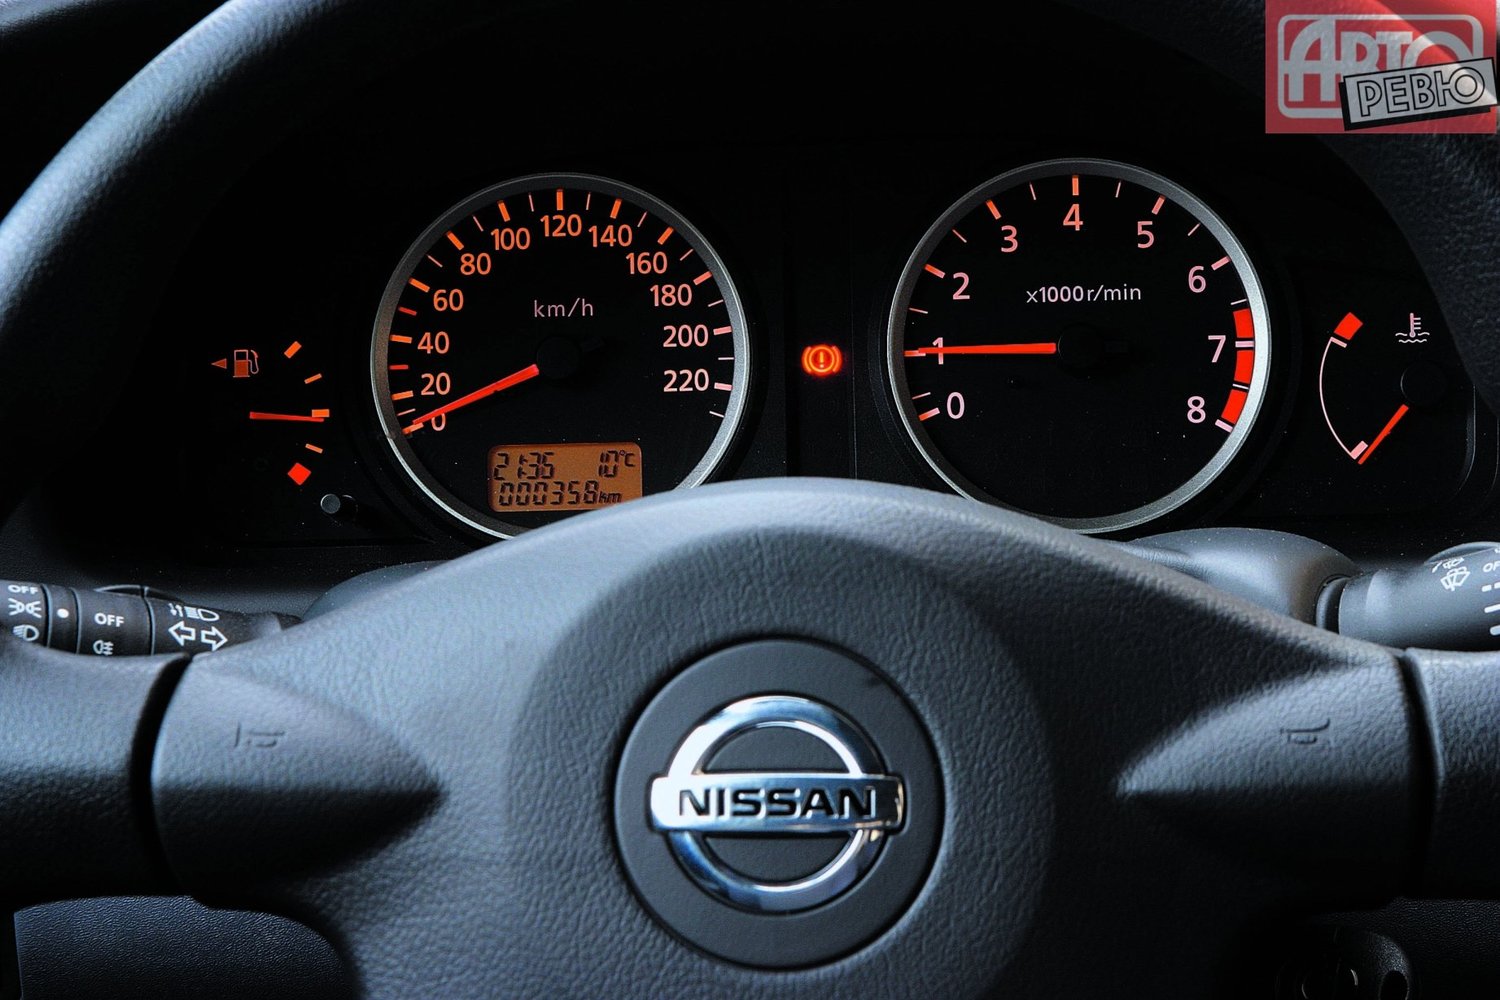 хэтчбек 5 дв. Nissan Almera 2003 - 2006г выпуска модификация 1.5 MT (82 л.с.)